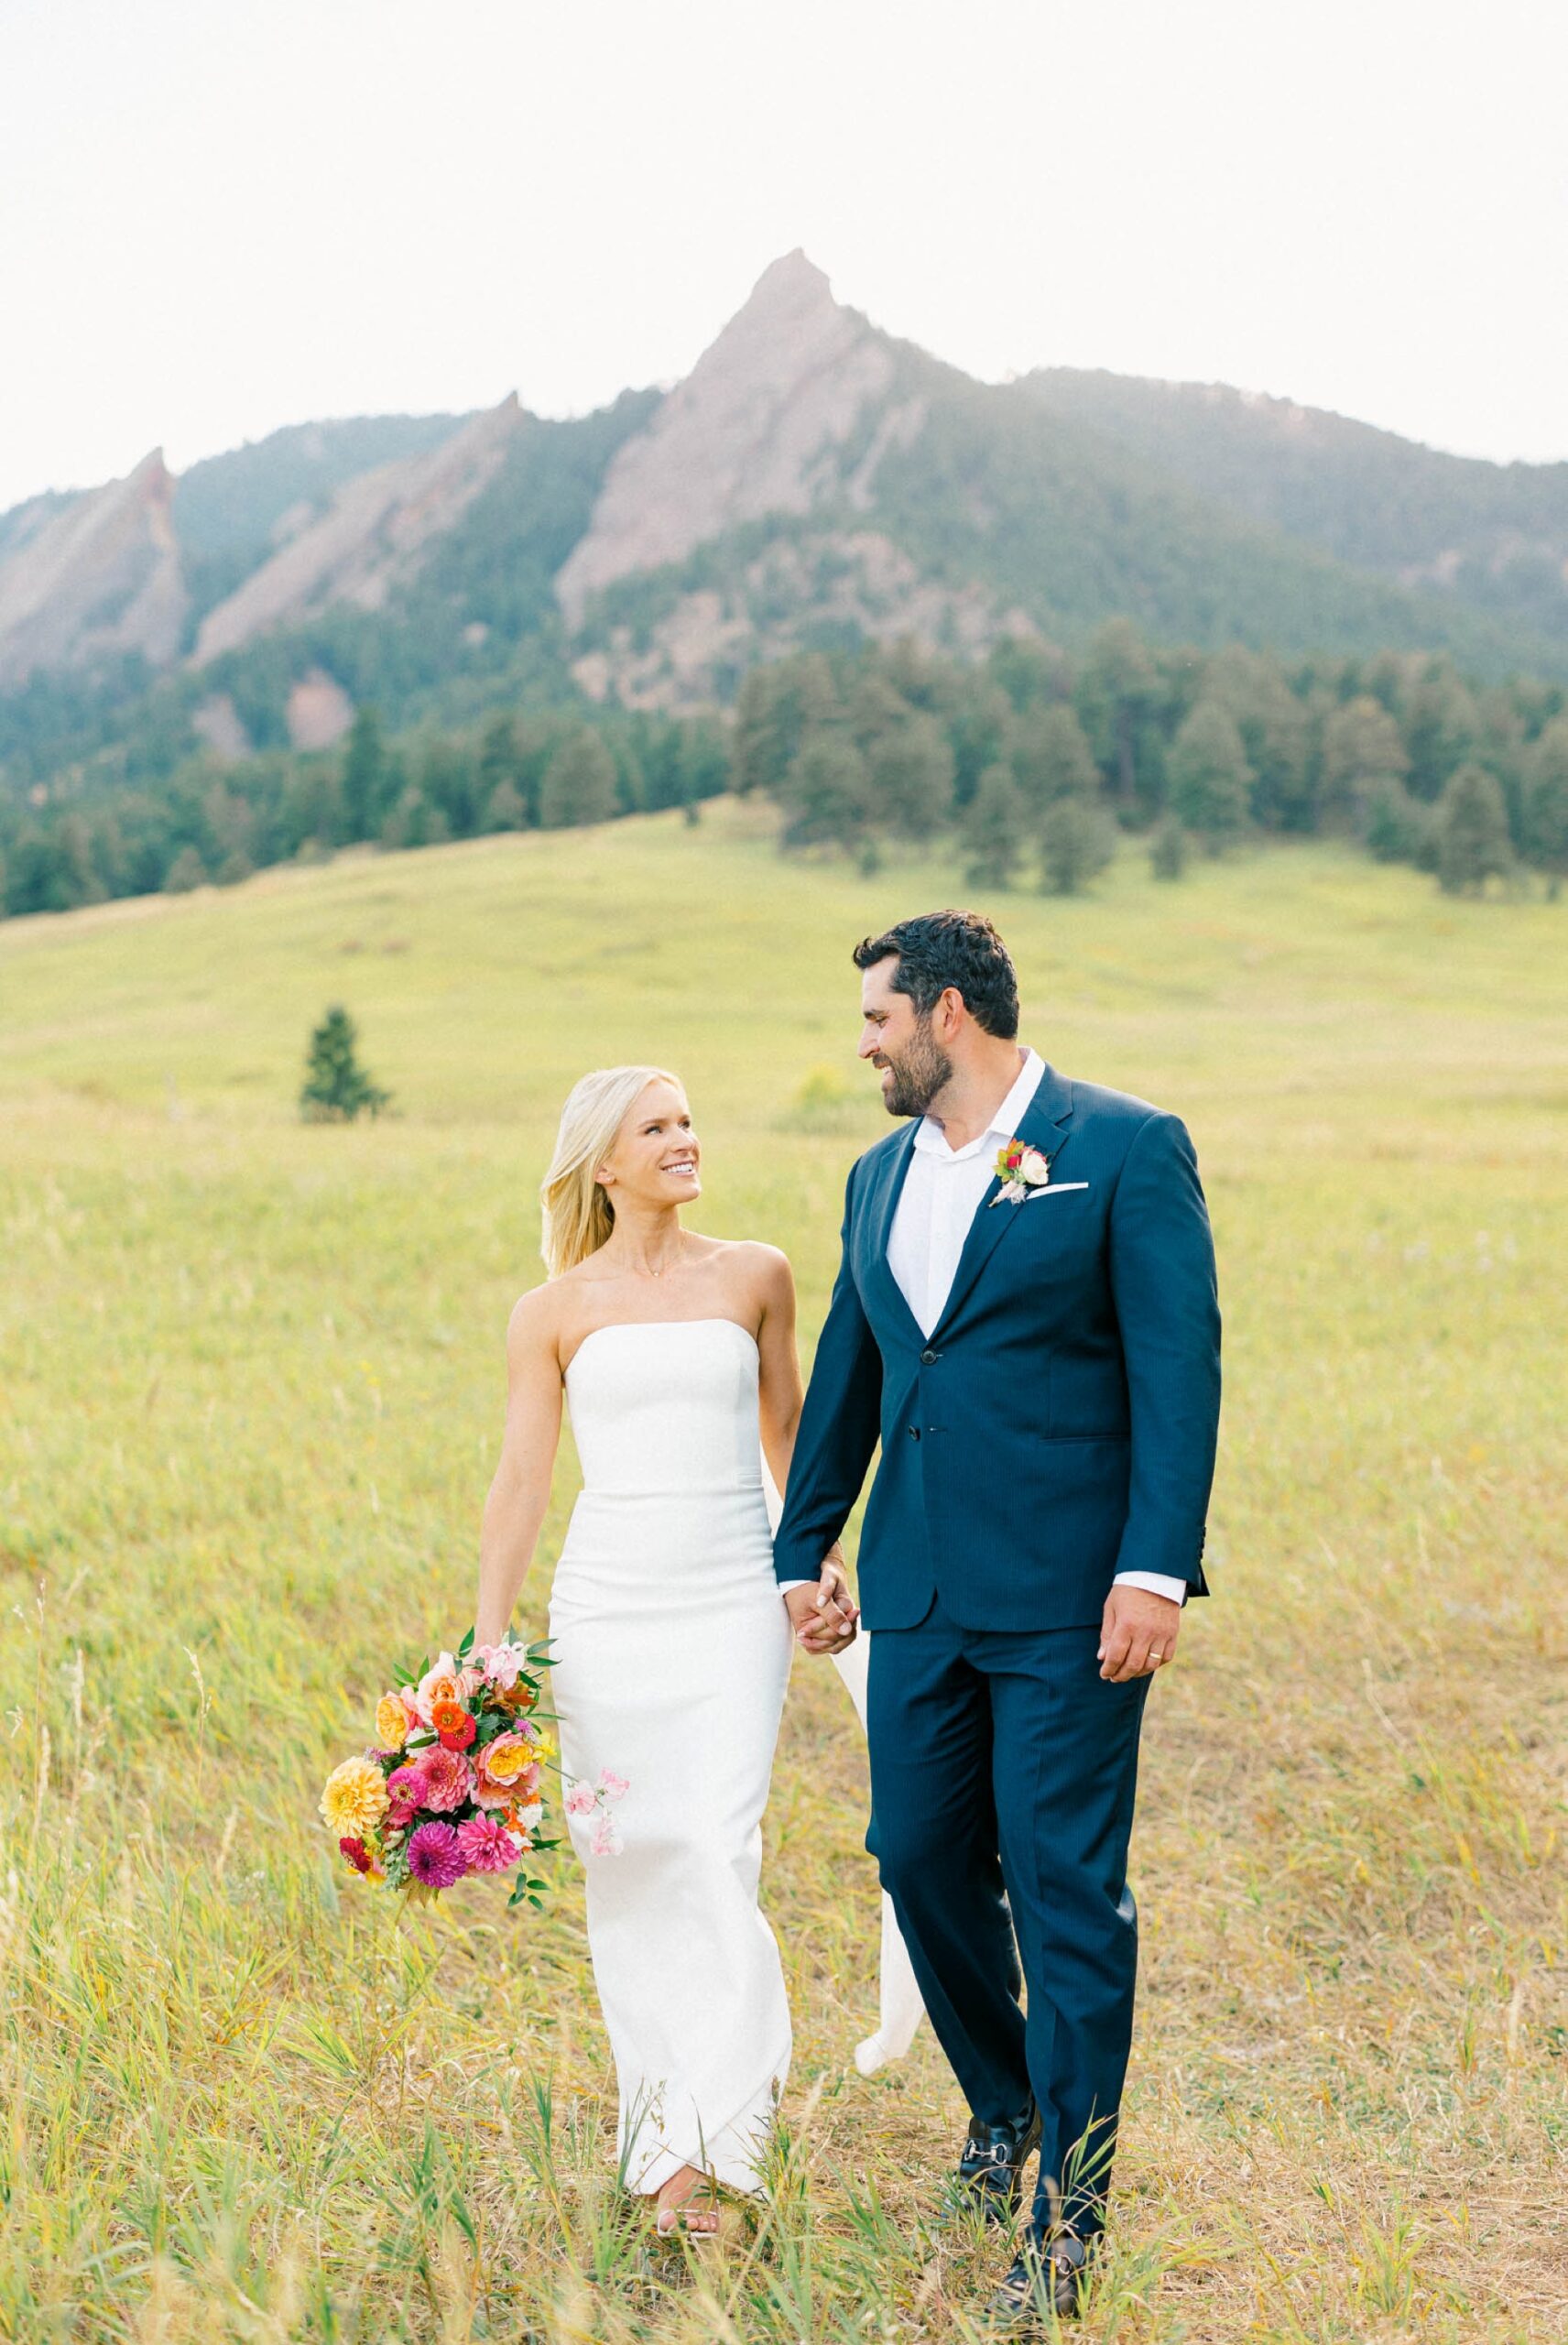 Vibrant photo of a wedding couple walking through a green mountain field in Boulder, Colorado